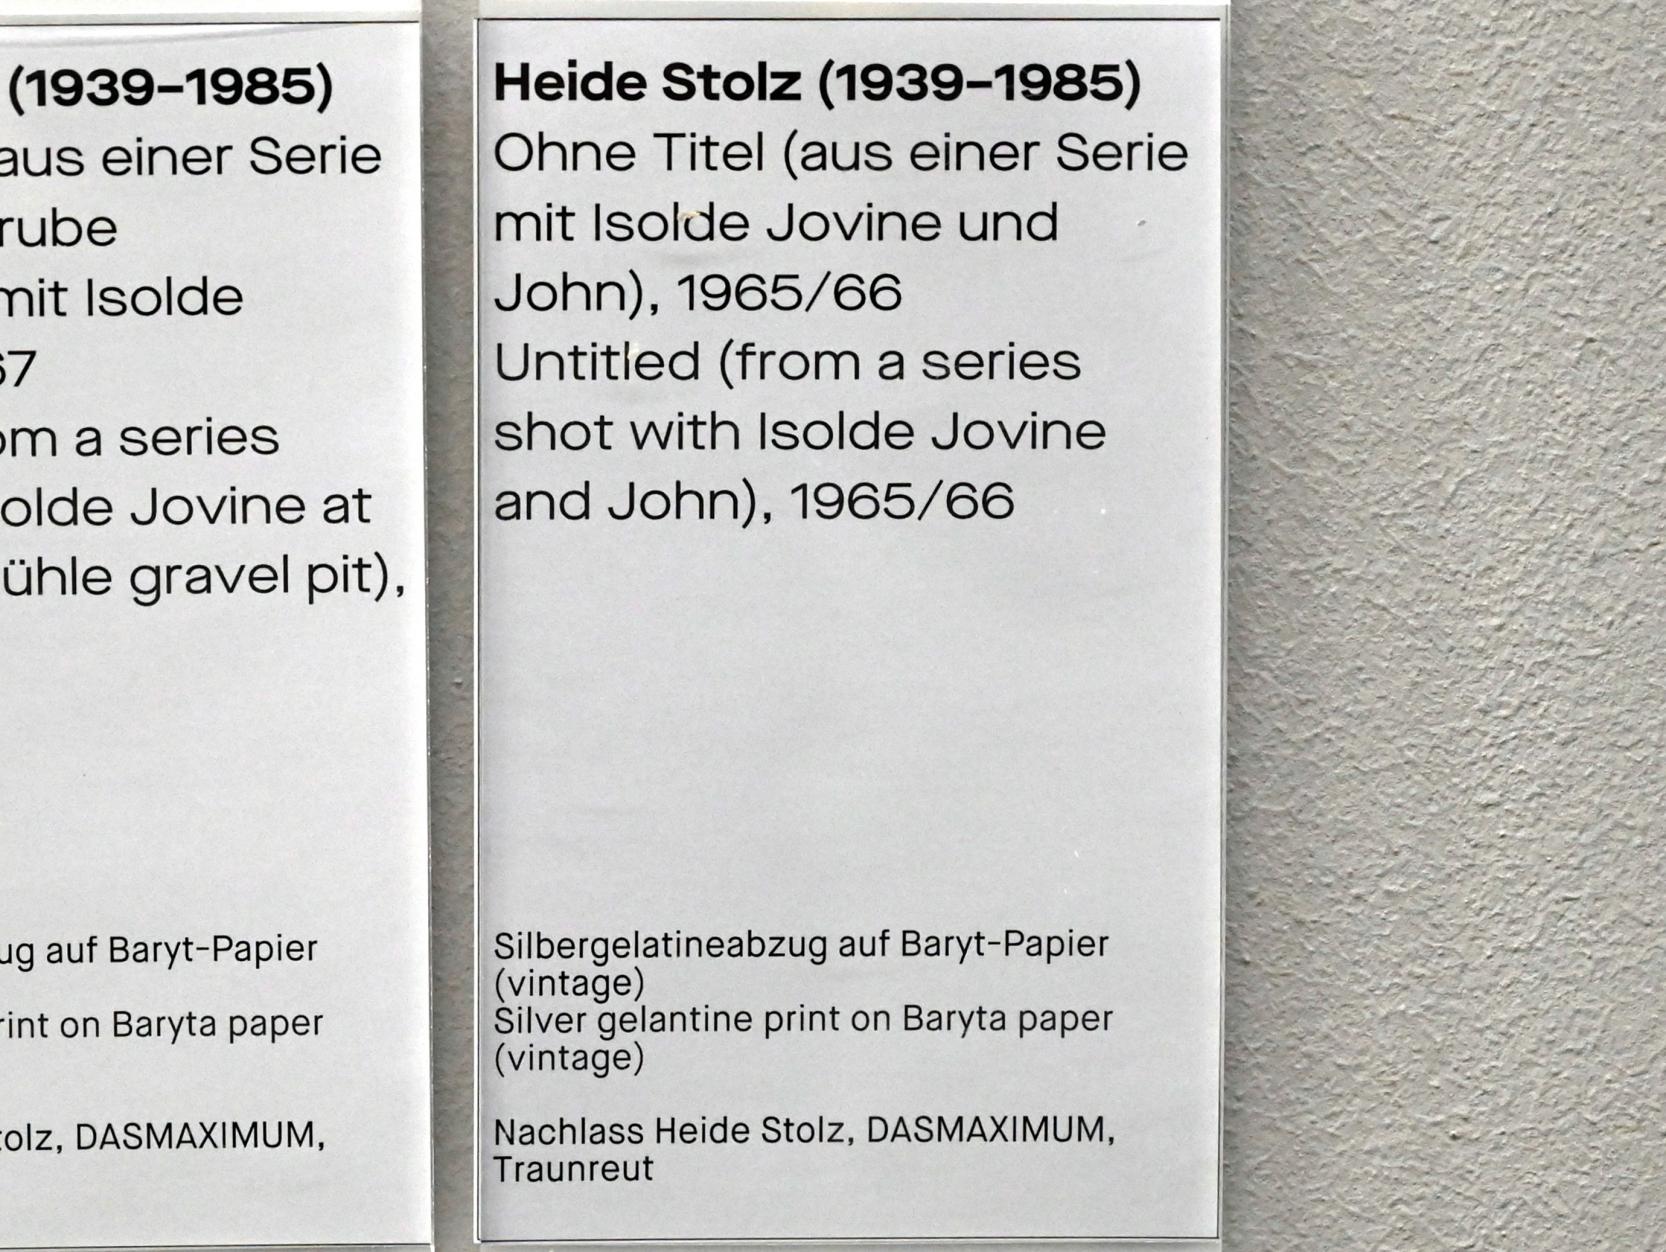 Heide Stolz (1960–1969), Ohne Titel (aus einer Serie mit Isolde Jovine), Chemnitz, Museum Gunzenhauser, Saal 1.6 - Uwe Lausen und Heide Stolz, 1965–1966, Bild 2/2